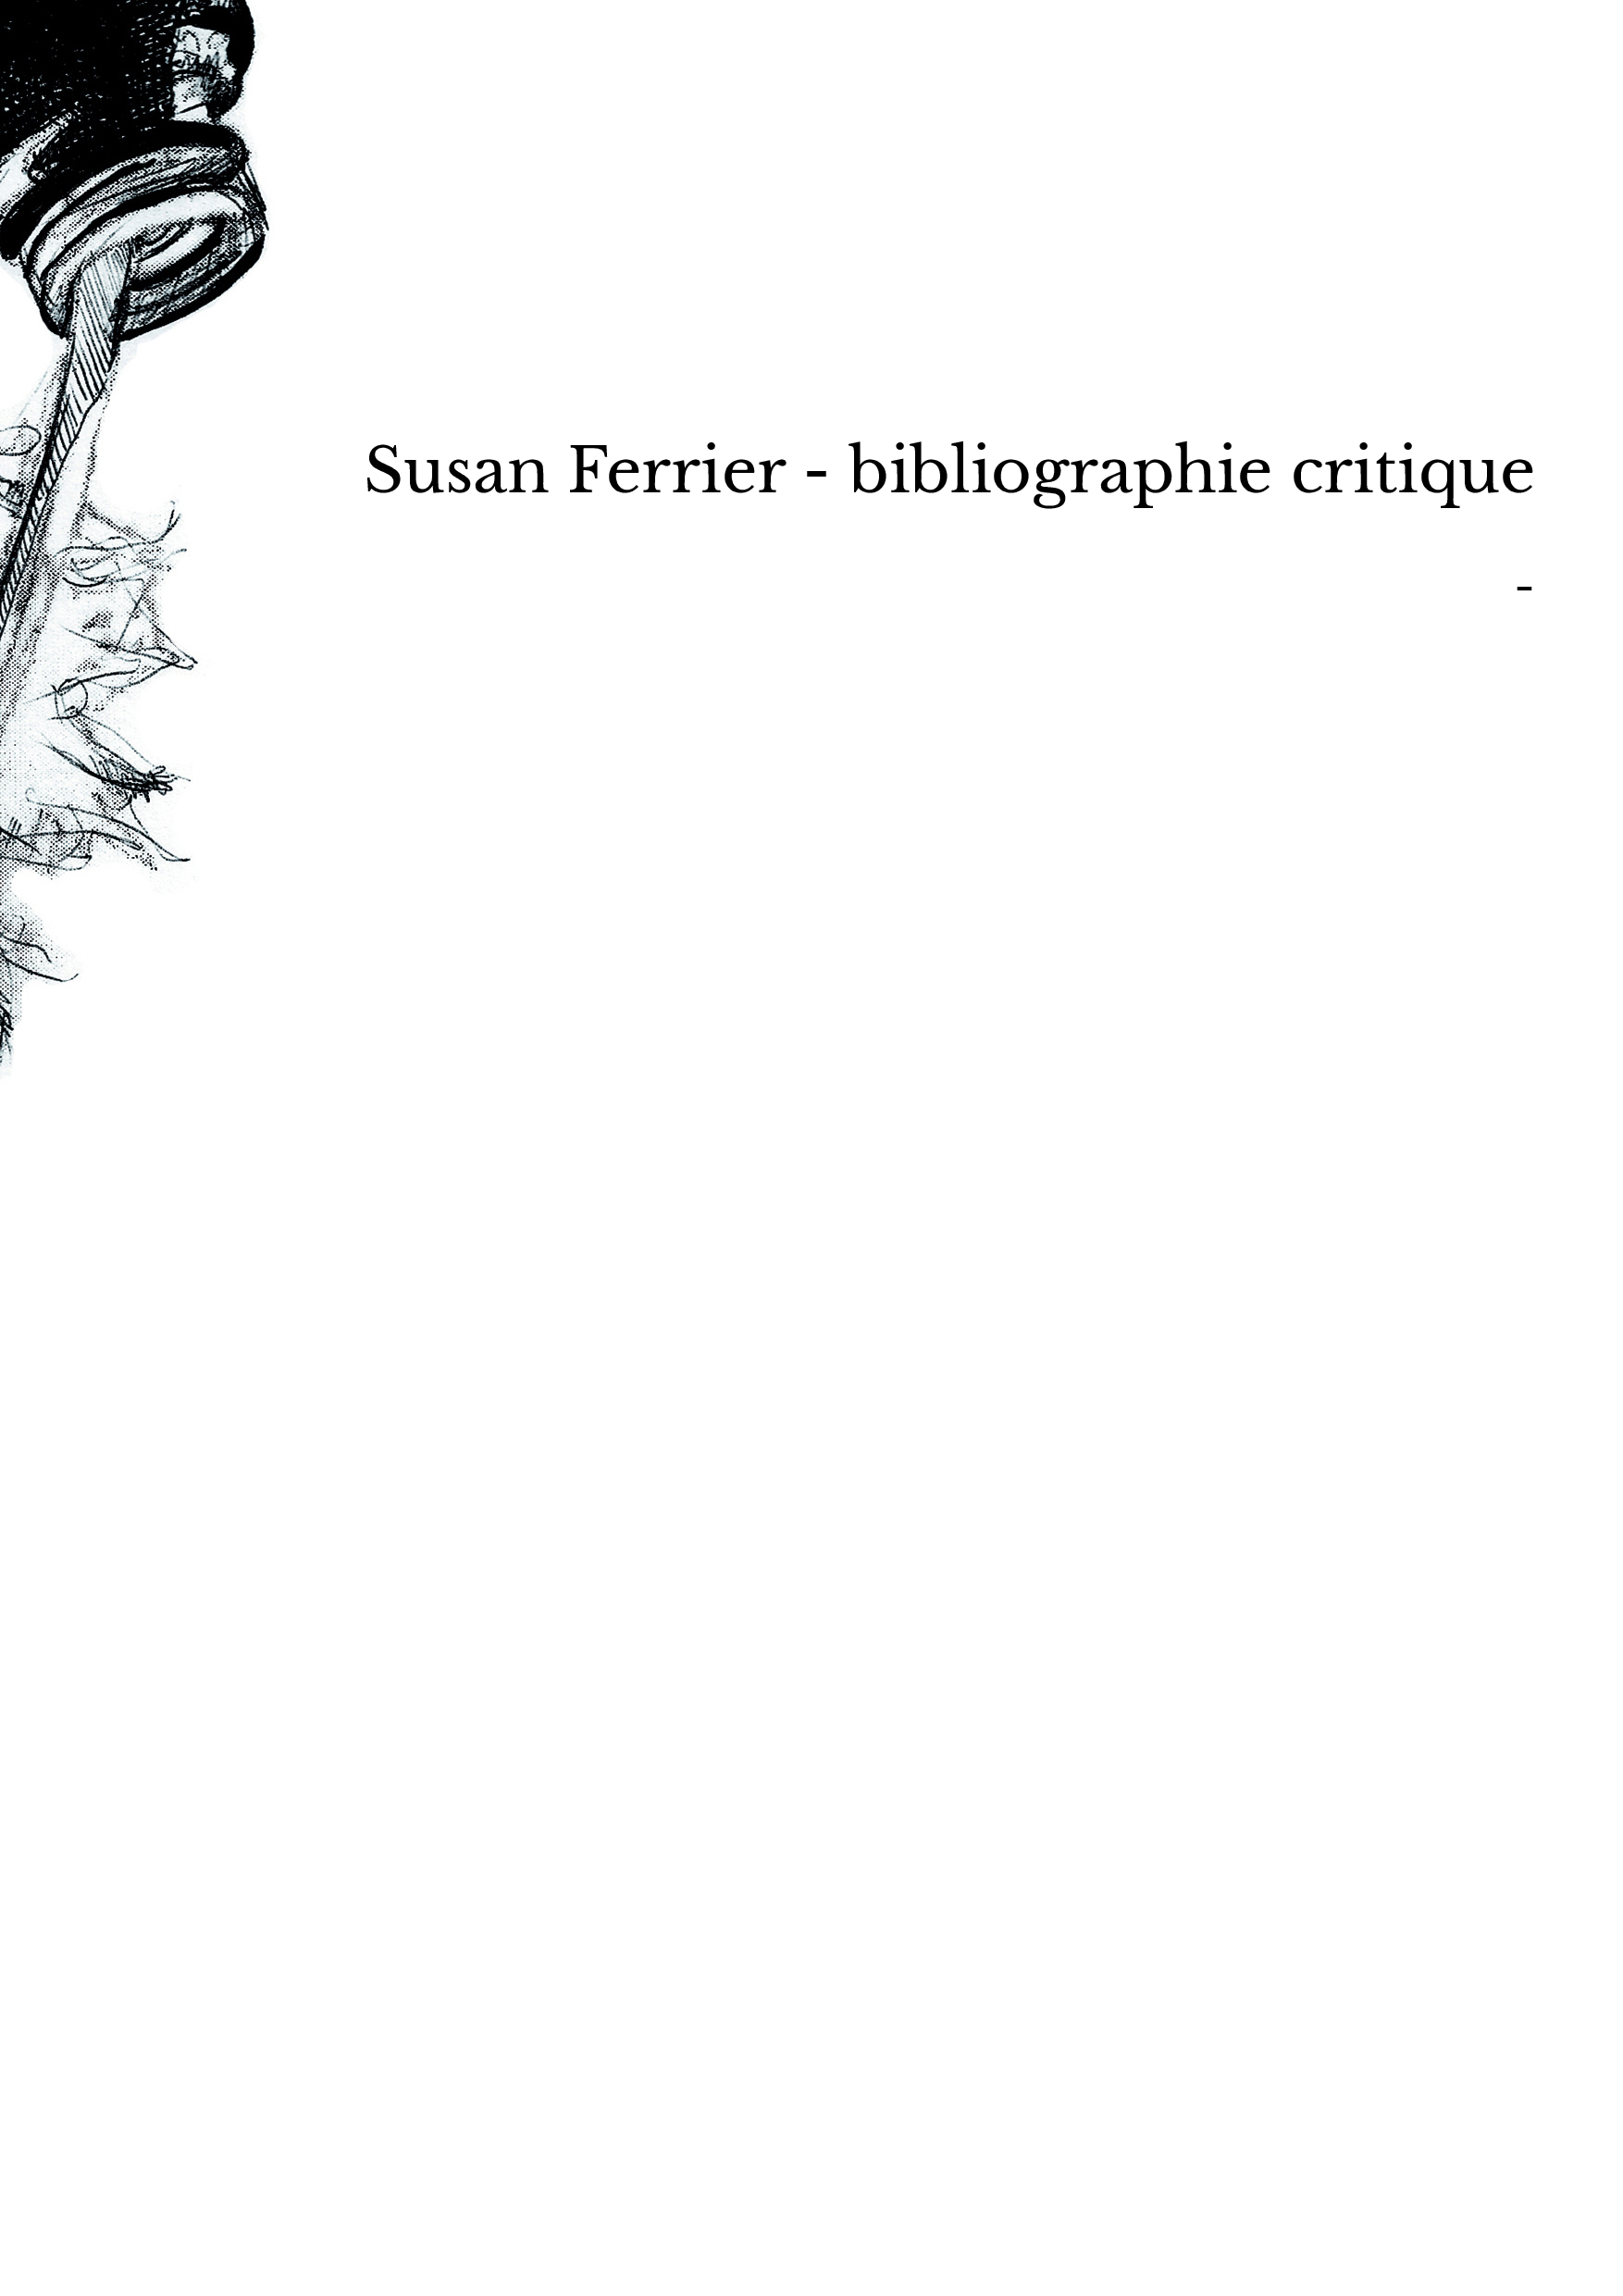 Susan Ferrier - bibliographie critique